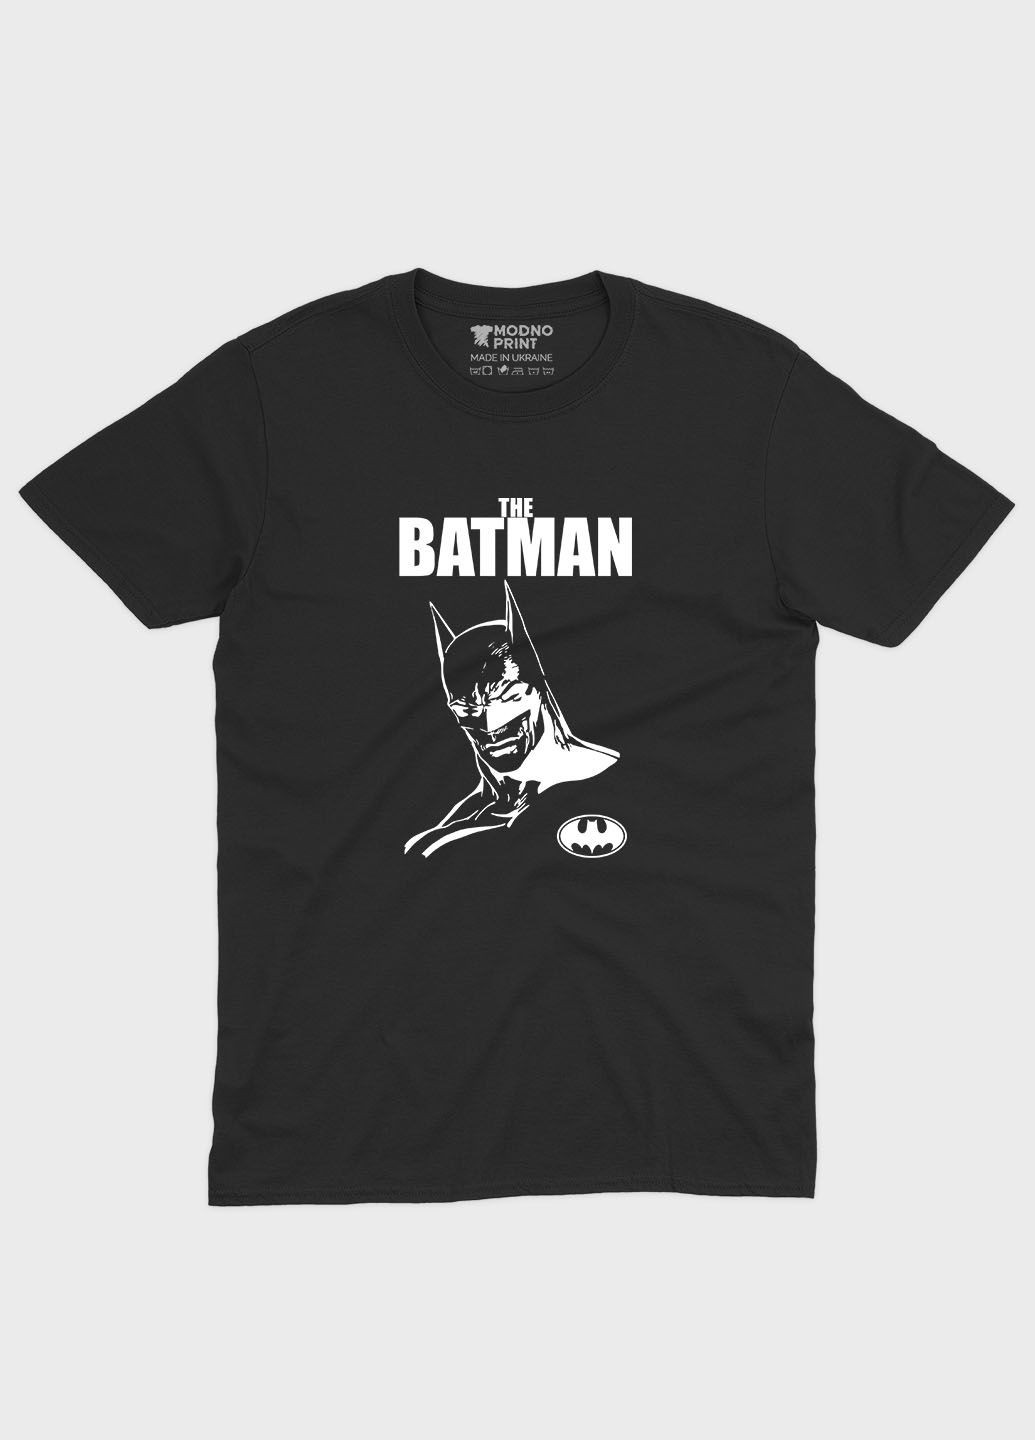 Чорна чоловіча футболка з принтом супергероя - бетмен (ts001-1-bl-006-003-009) Modno